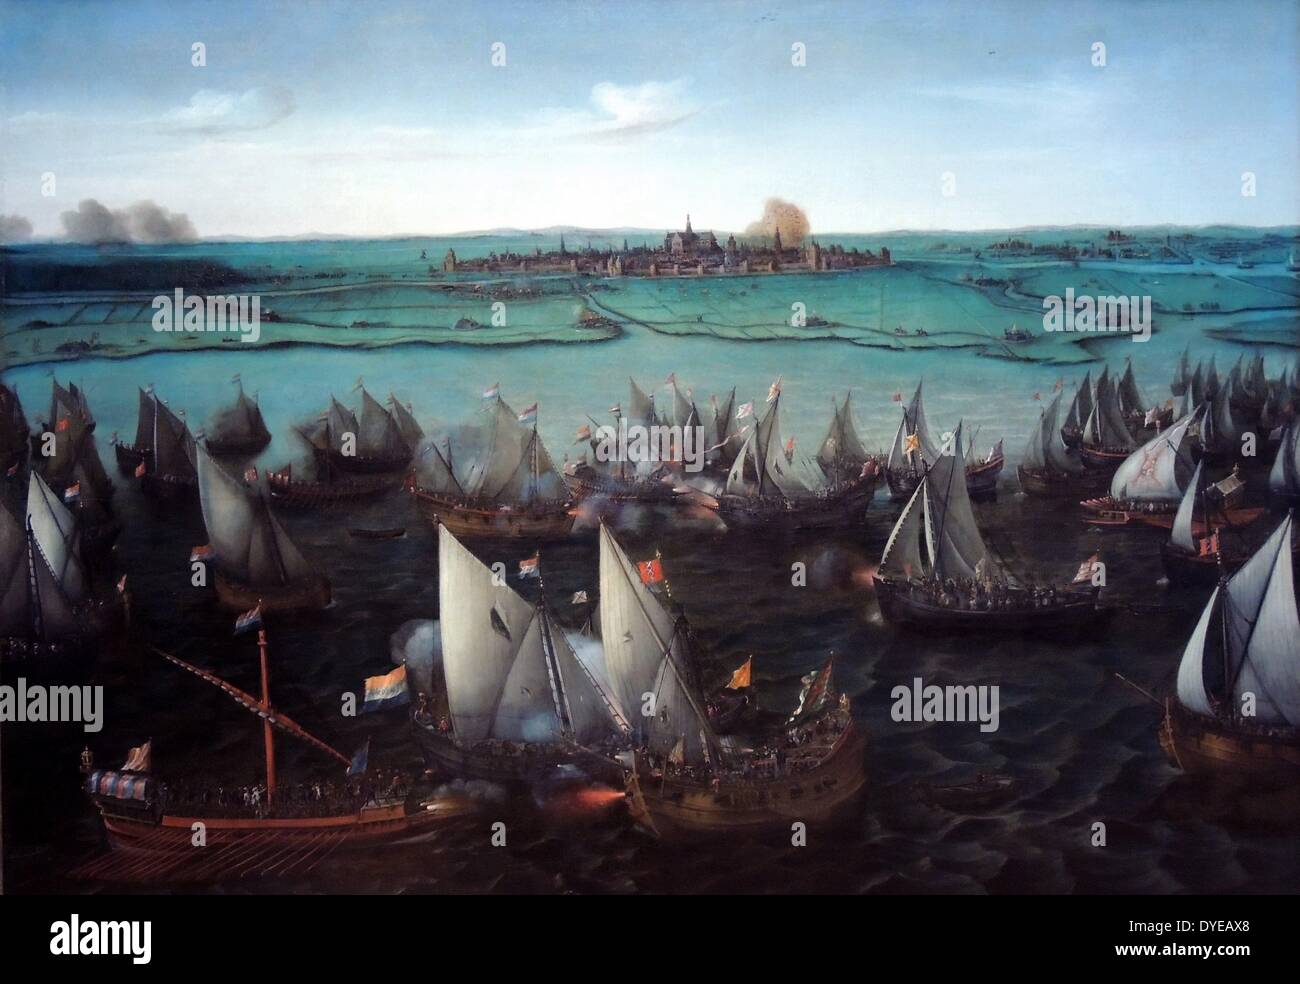 Bataille entre navires néerlandais et espagnols sur l'Haarlemmermeer par Hendrik Cornelisz Vroom (c.1566-1640) huile sur toile, en 1629 ou après Lorsque Haarlem verso avec la révolte des gueux en 1572, les Espagnols assiègent la ville. En mai 1573, les rebelles ont tenté de retrouver l'Haarlemmermeer, qui était un important canal d'alimentation de la ville. Ils sont défaits par une flotte de navires espagnols et d'Amsterdam (Amsterdam était alors encore fidèles à l'Espagne). Haarlem a été finalement forcés de se rendre à l'espagnol. Banque D'Images